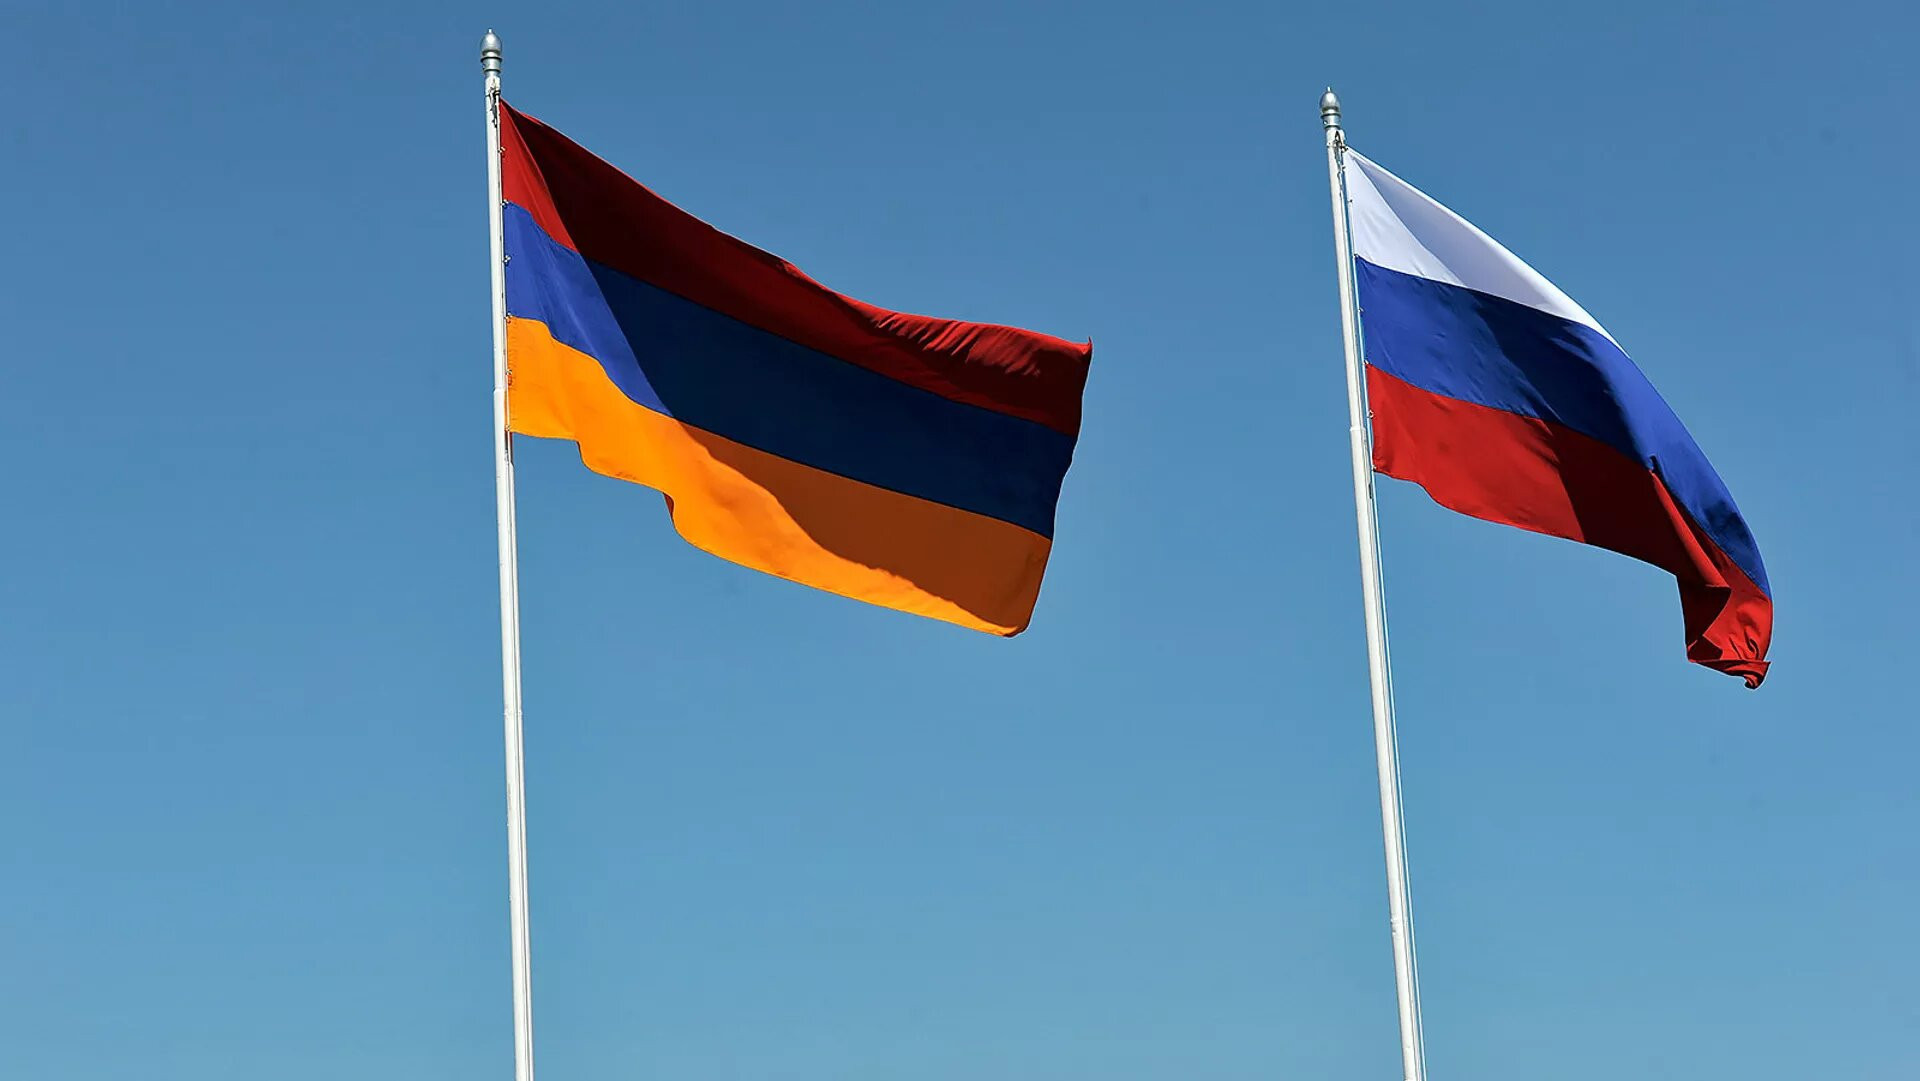 Erməni biznesmenlər hökümətin anti - Rusiya mövqeyindən narahatdır